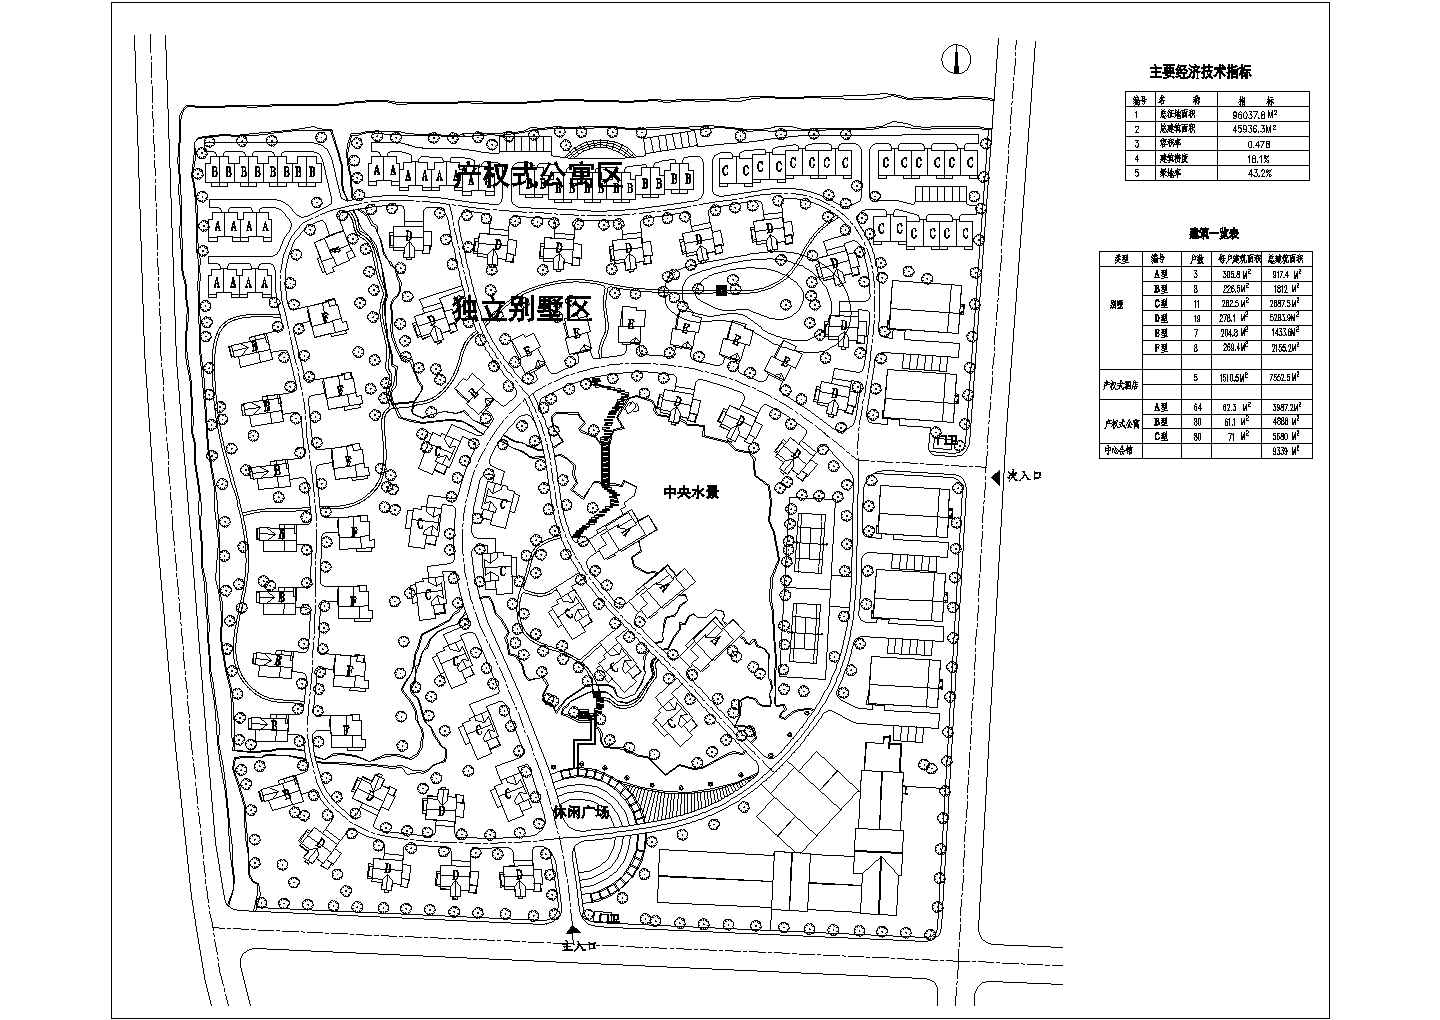 96037.8平米小区规划设计施工图